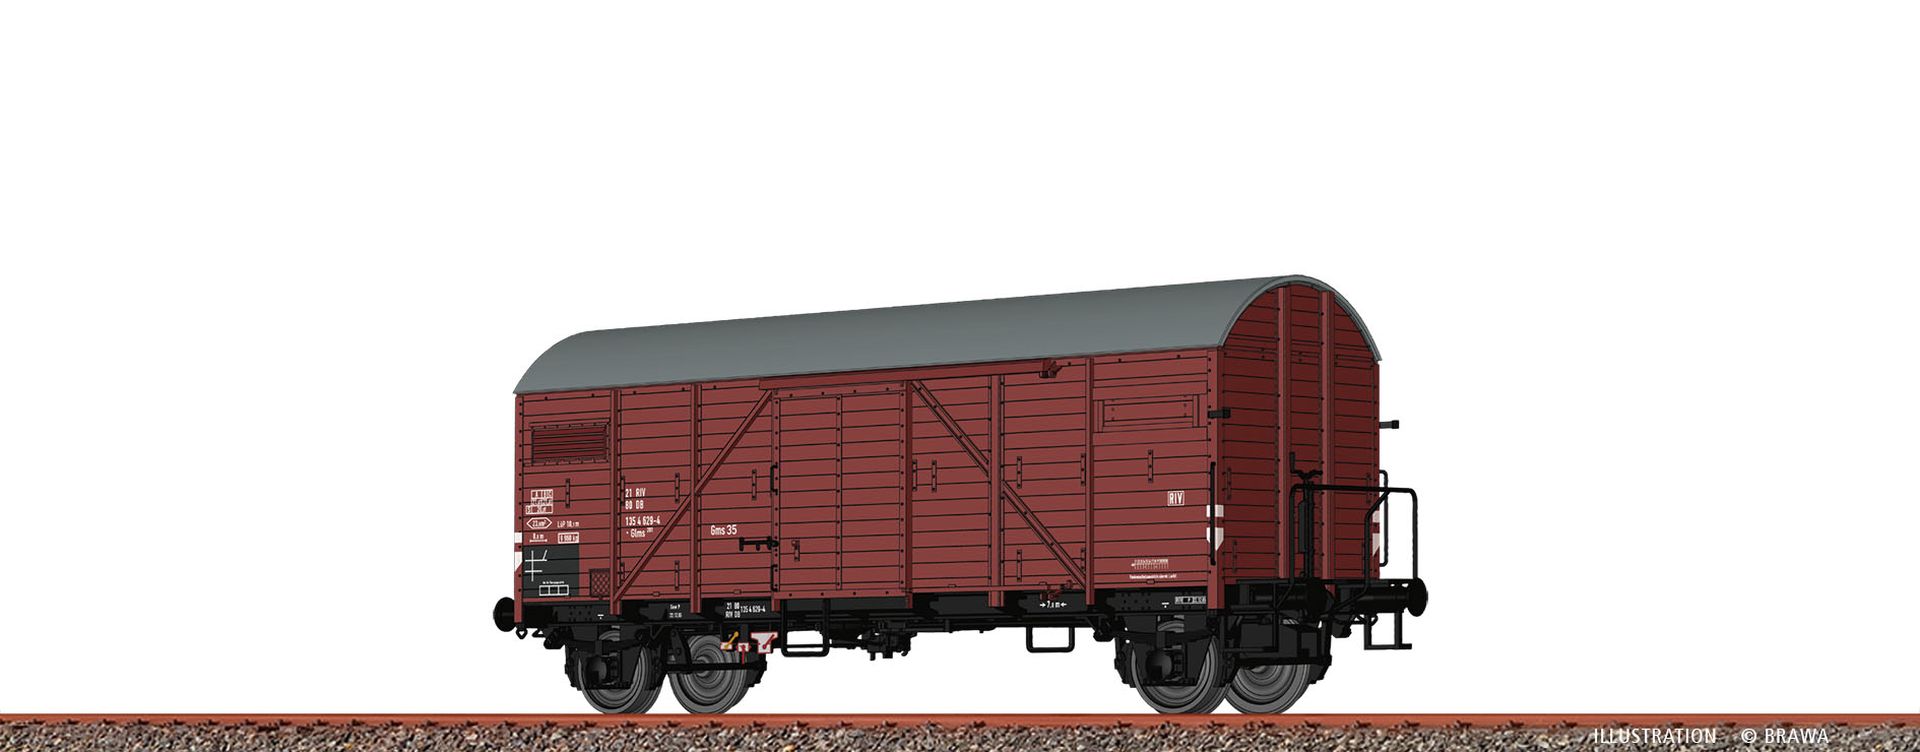 Brawa 50723 - Gedeckter Güterwagen Glms201, DB, Ep.IV